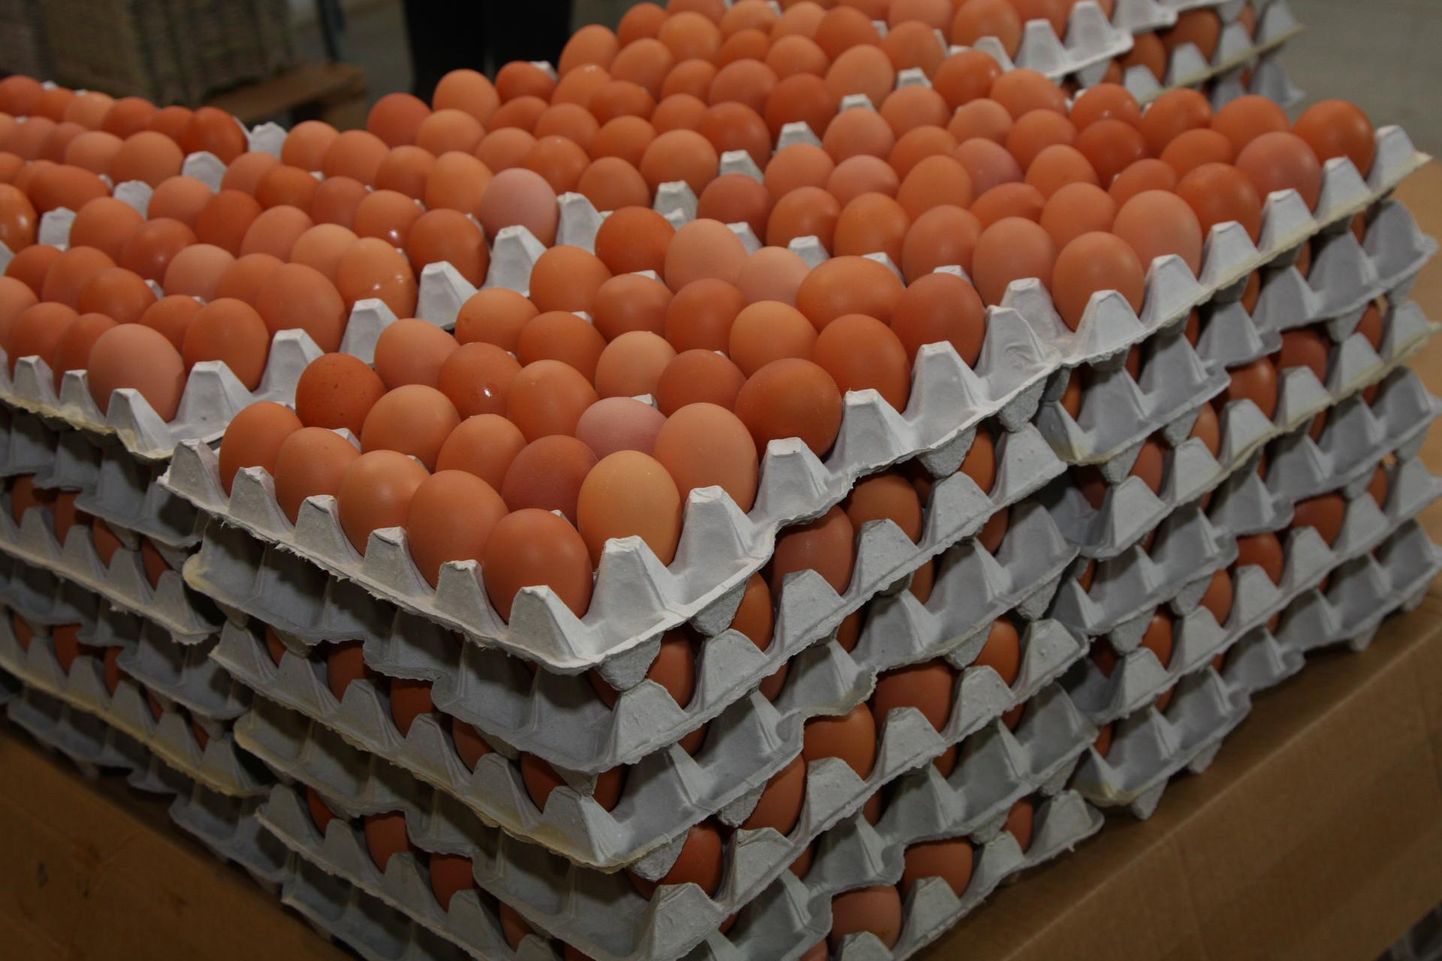 Paljud kaupmehed on juba loobunud puurikanade munade müügist. Tulevikus võivad ka kanad puurist pääseda.